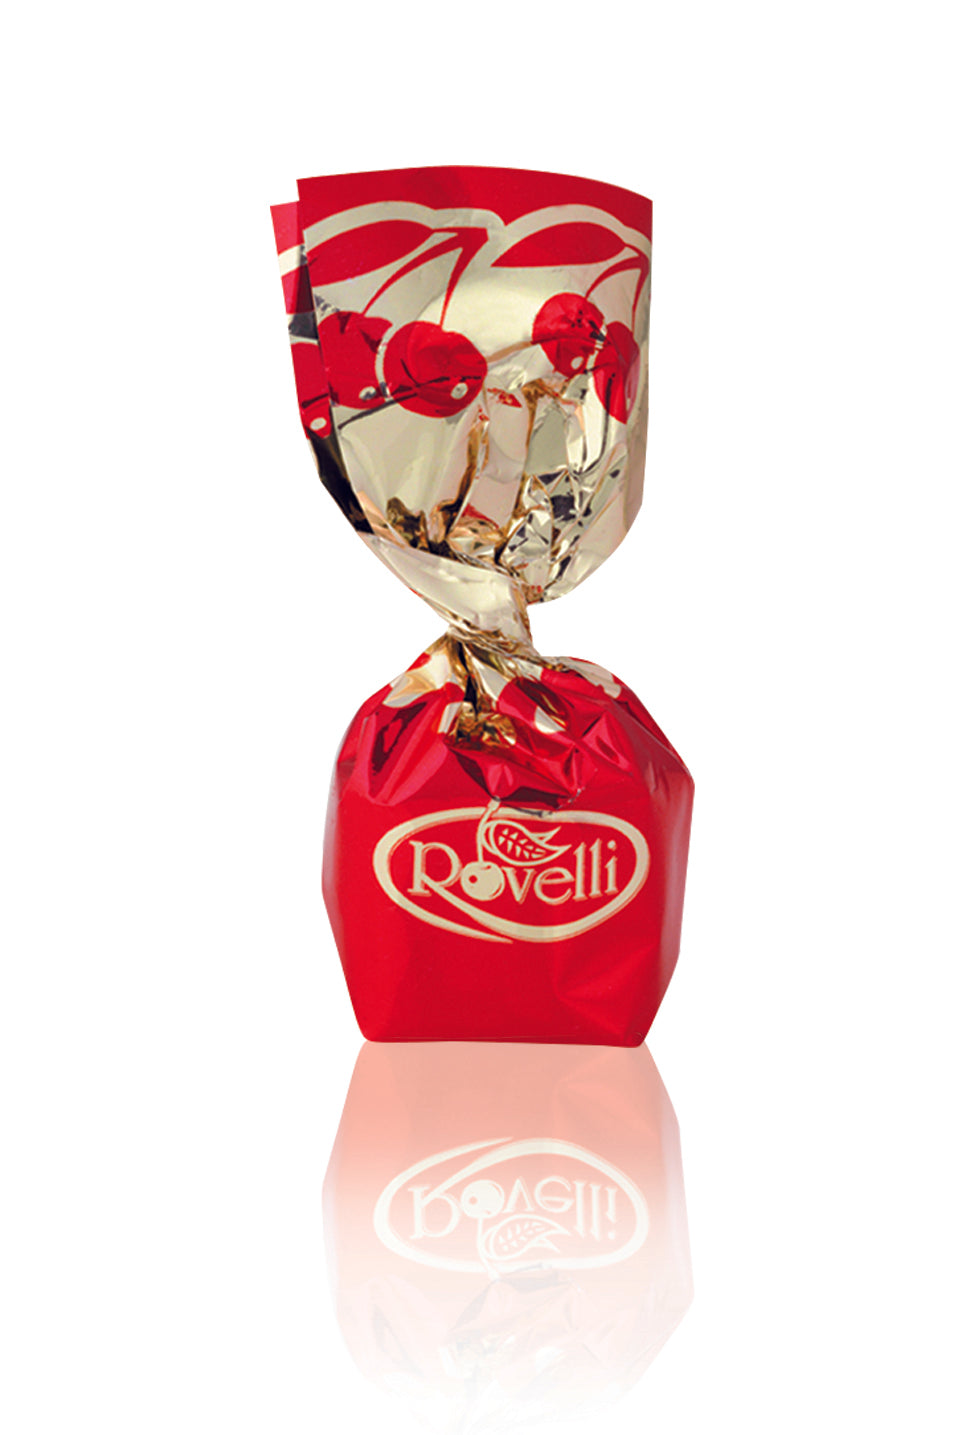 Σοκολατάκι Rovelli με κεράσι και λικέρ